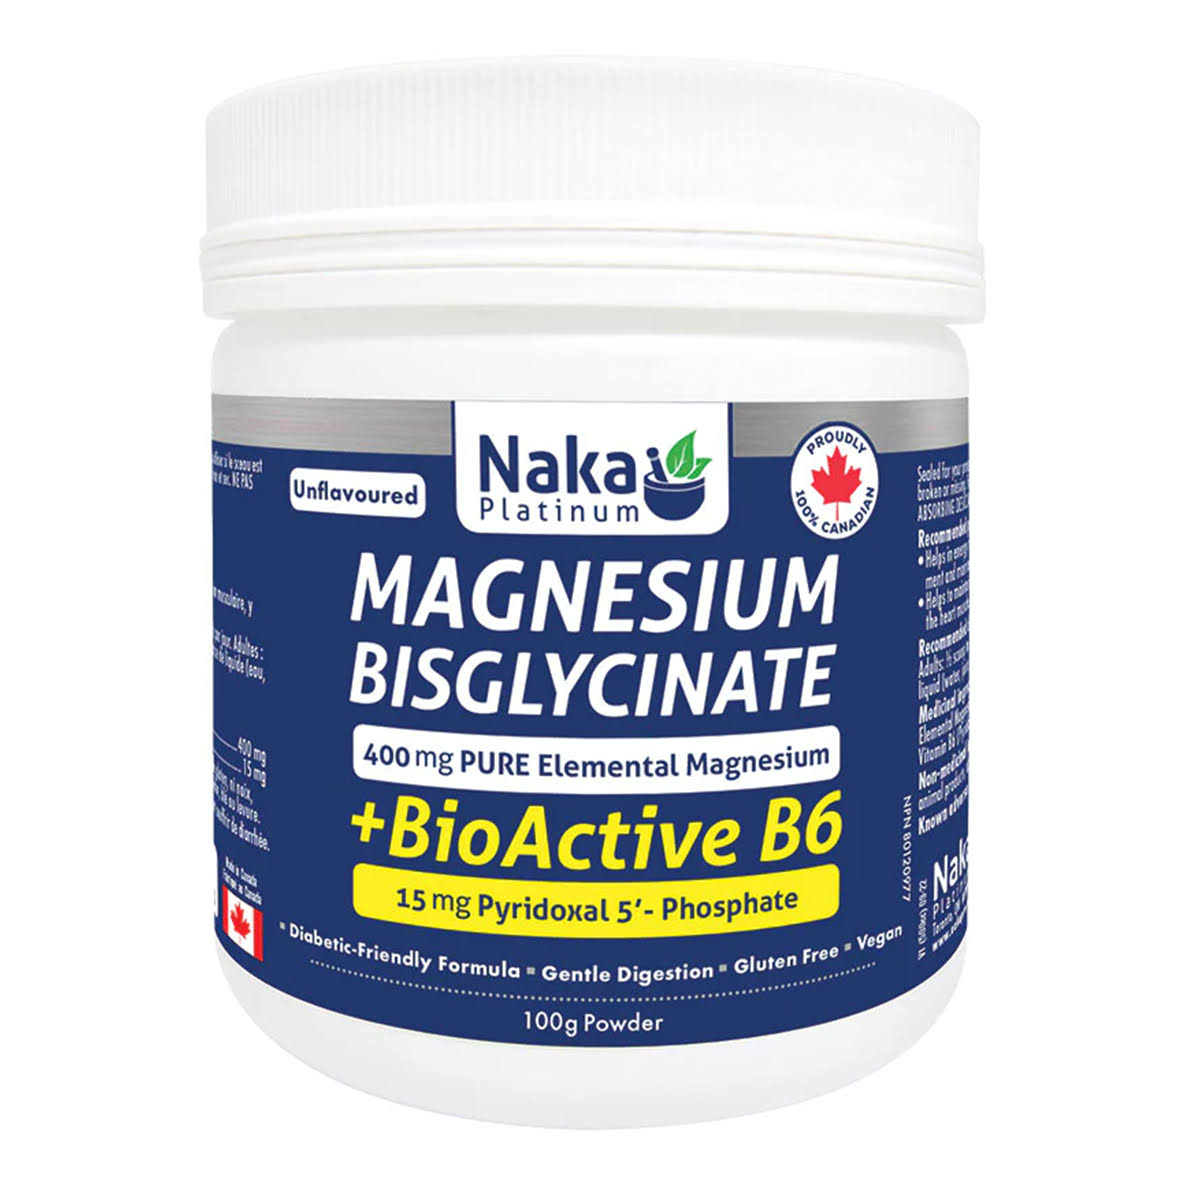 Naka Platinum Magnesium Bisglycinate + BioActive B6 100g